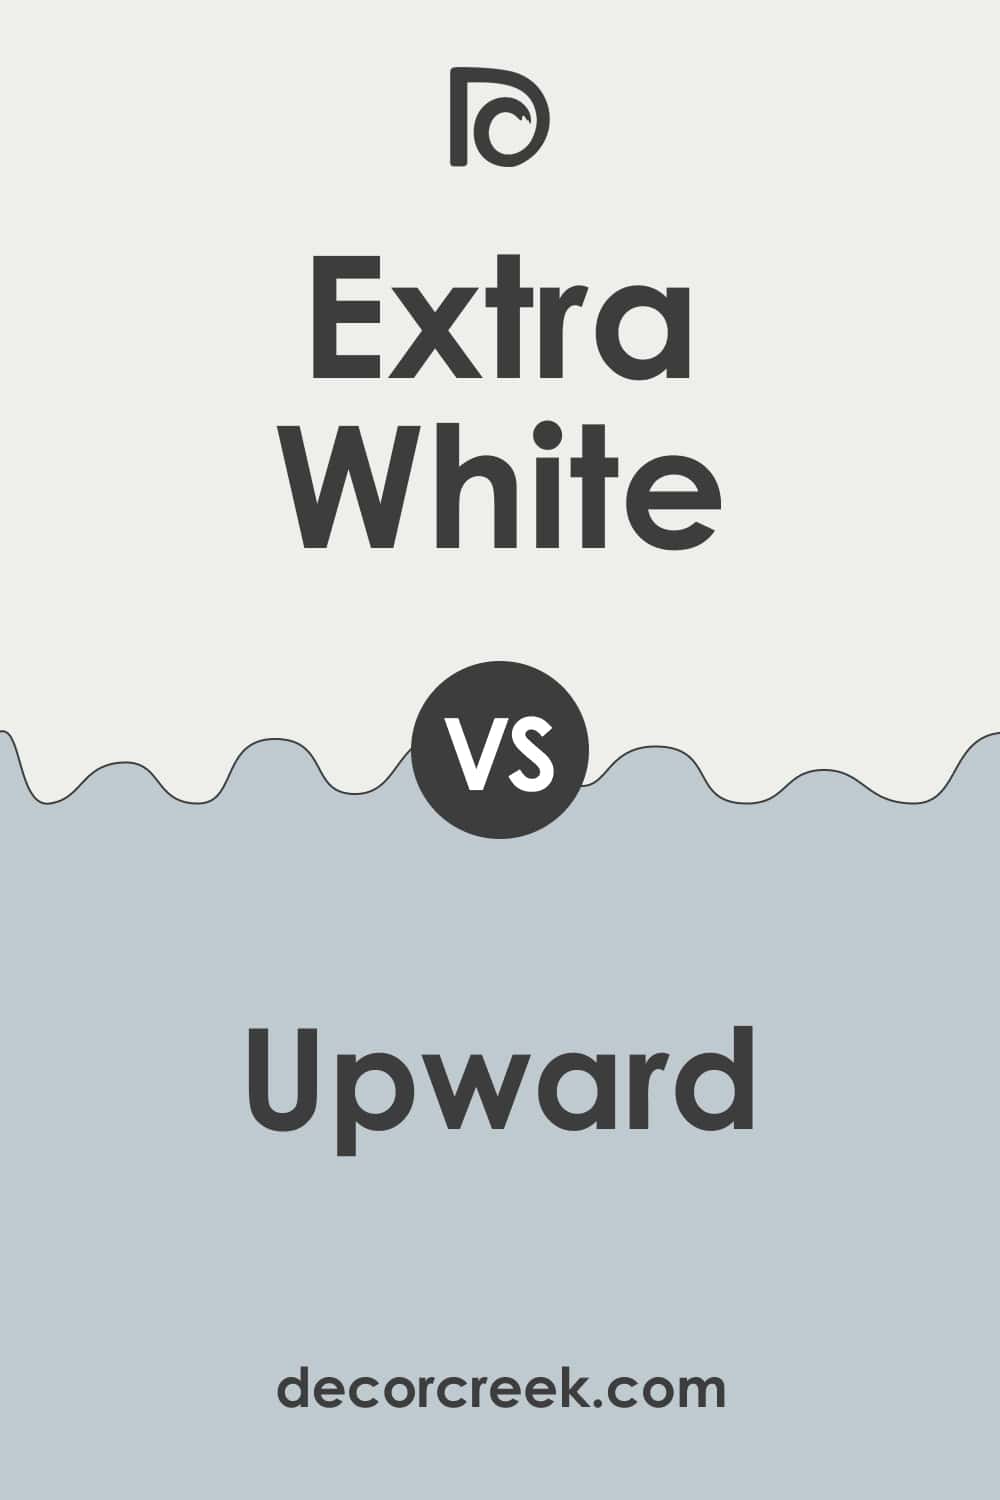 Extra White vs Upward